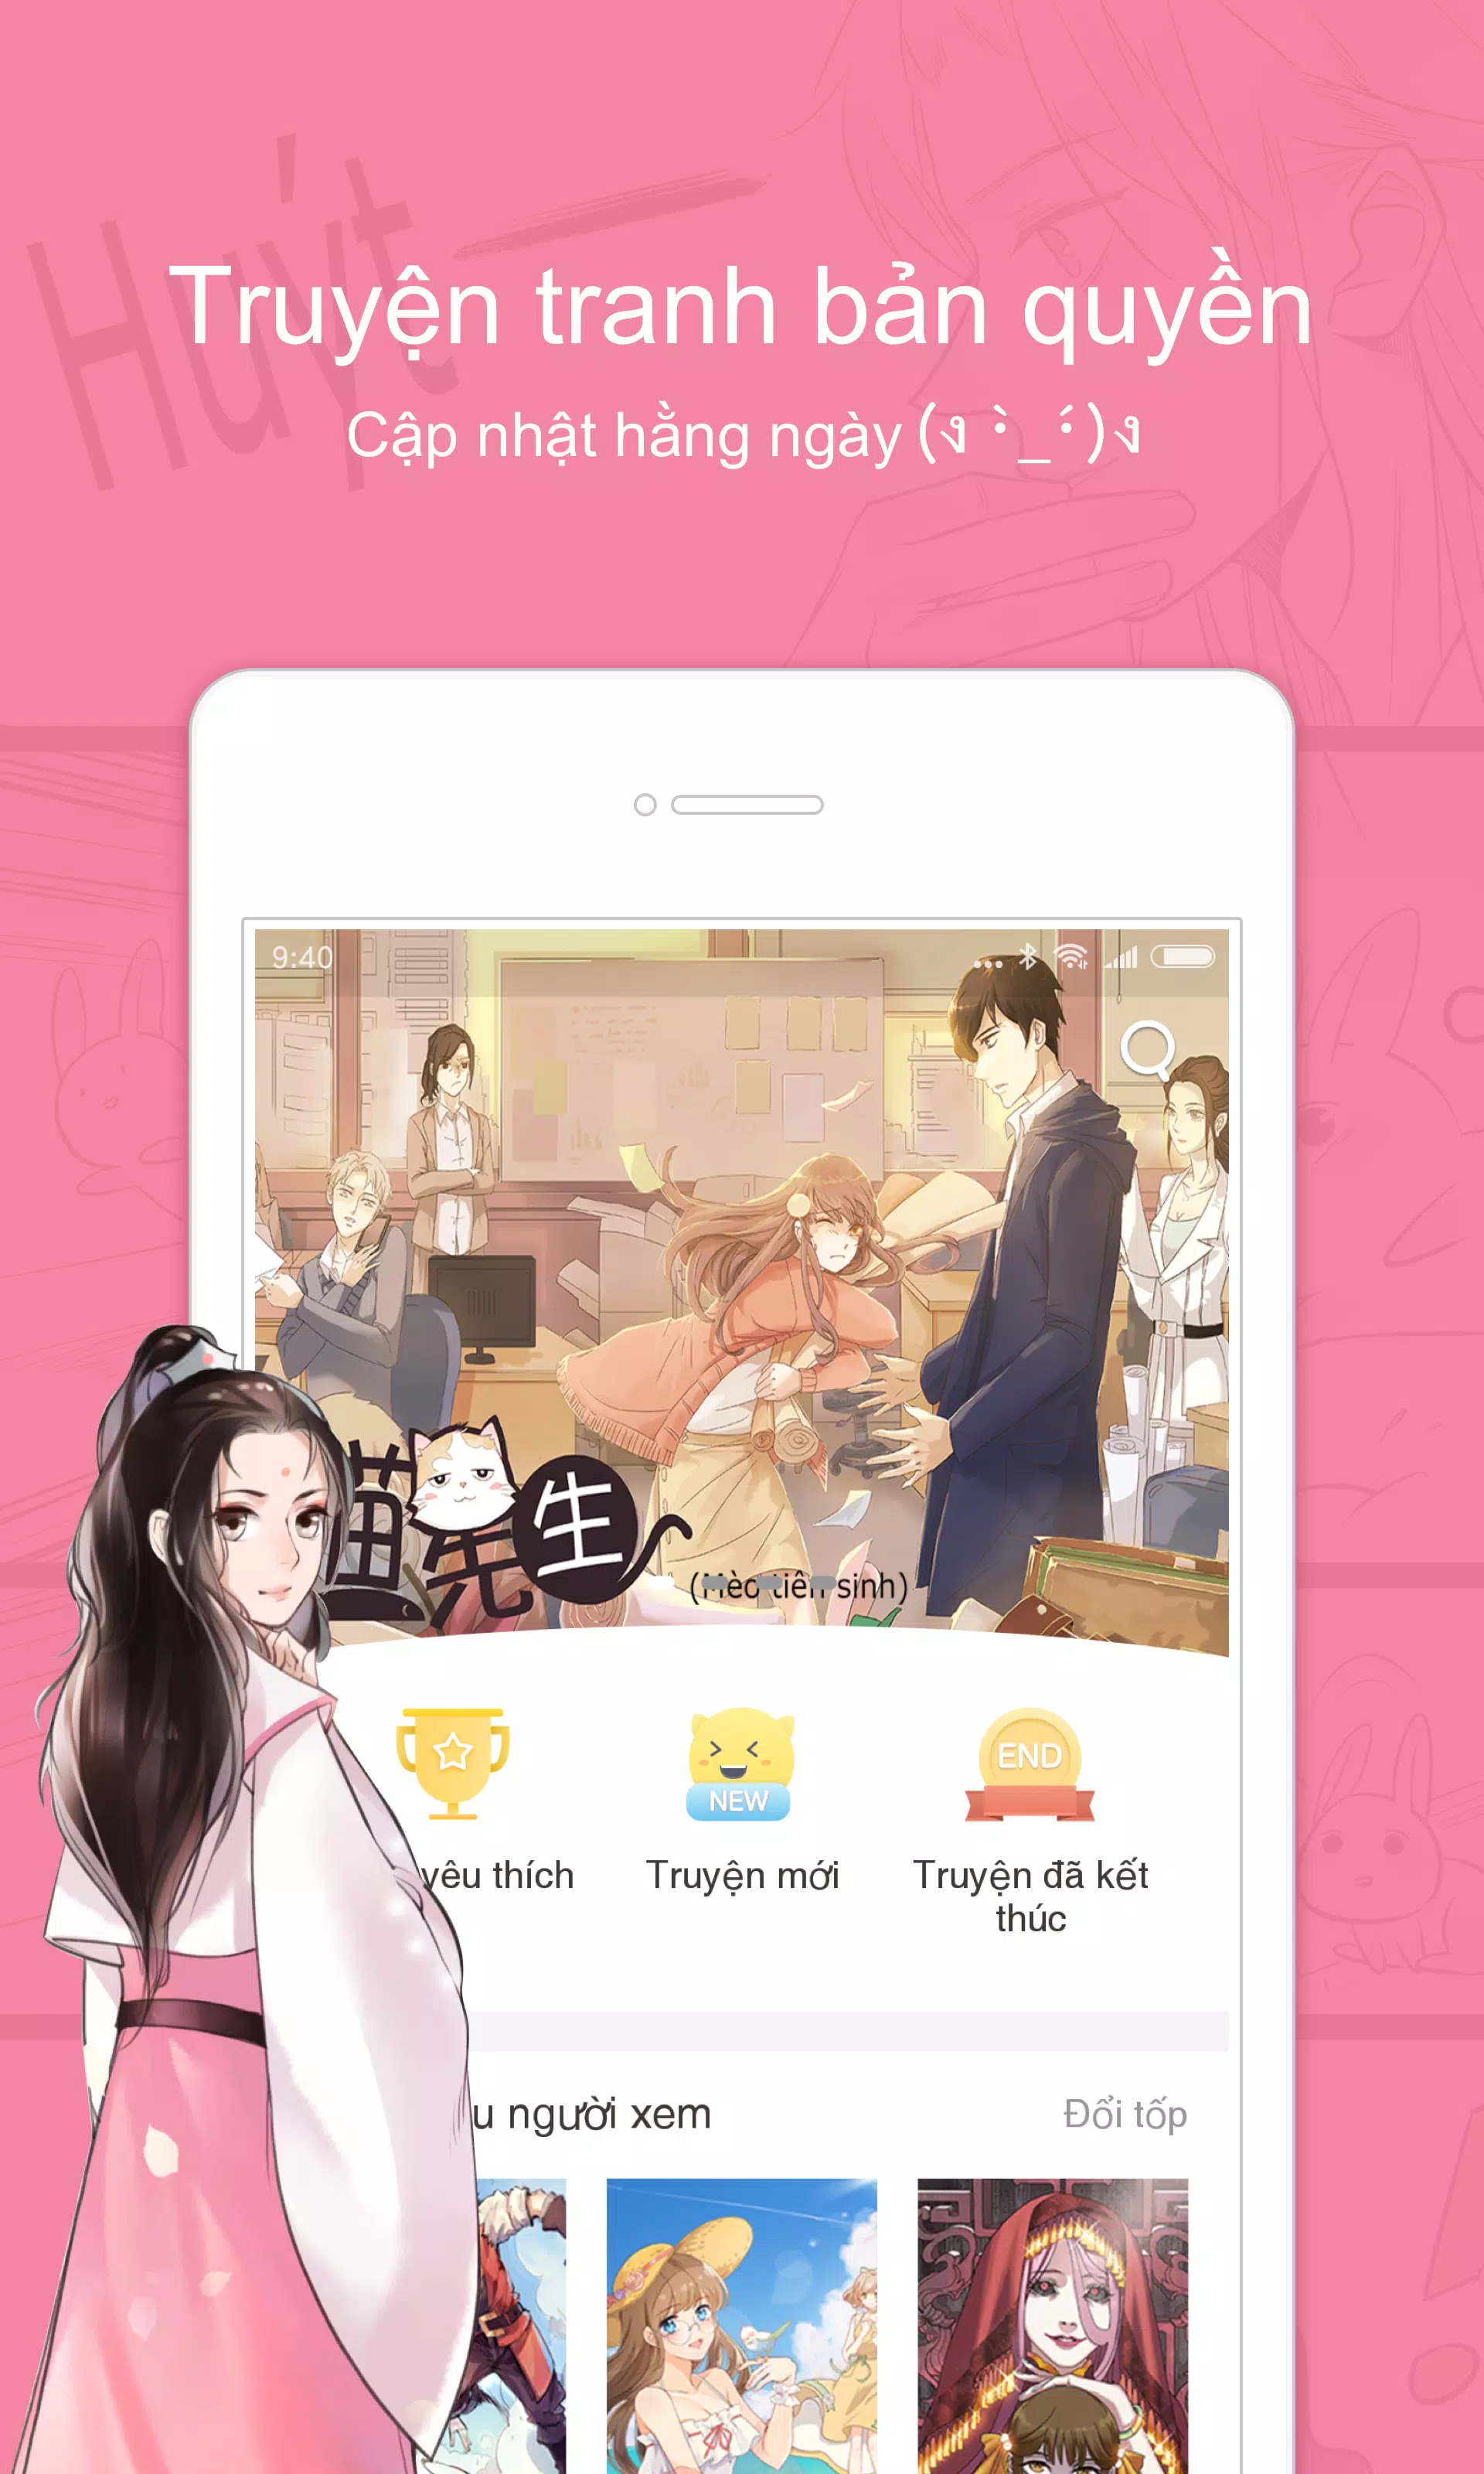 MangaGO - Manga App APK Download 2022 Free